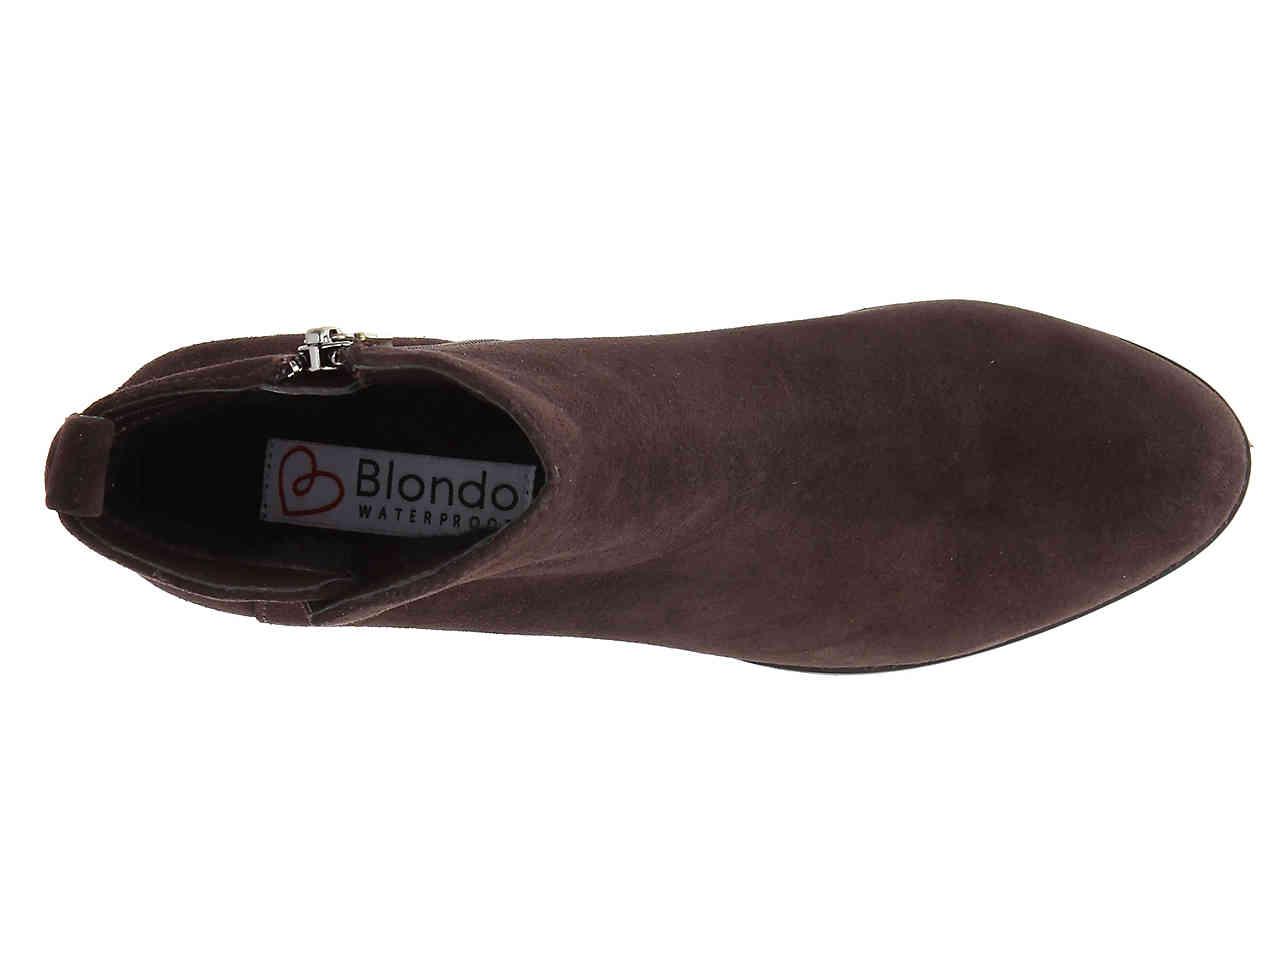 blondo iris booties